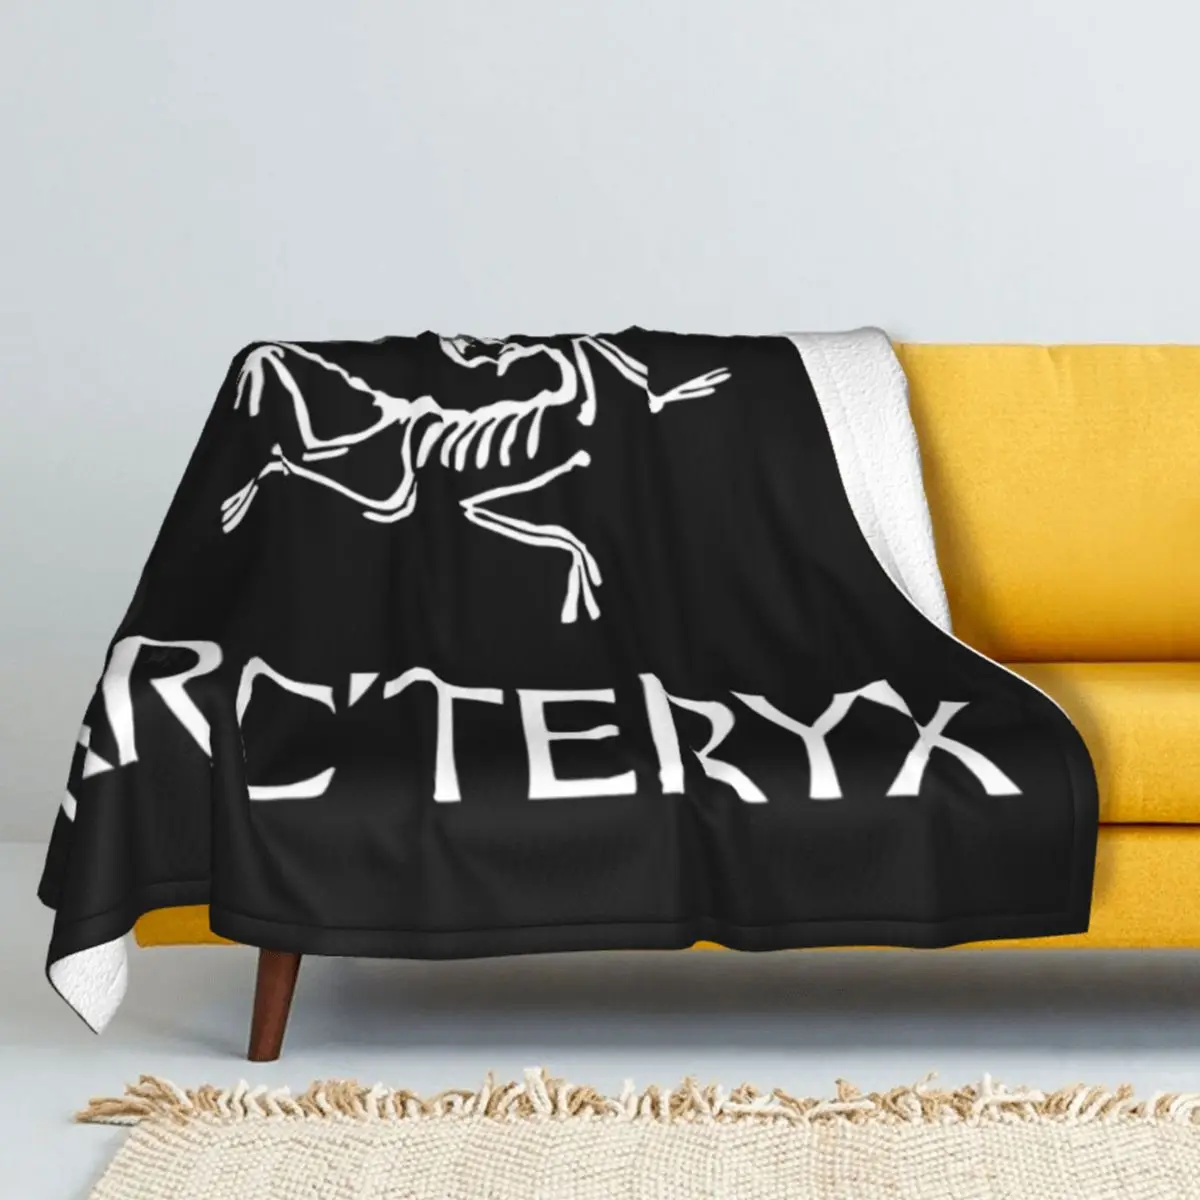 

Зимнее утолщенное кашемировое одеяло arcтерикс-BW для ванной s одеяло с ягненком одеяло Коралловое Флисовое одеяло мягкое покрывало для крова...